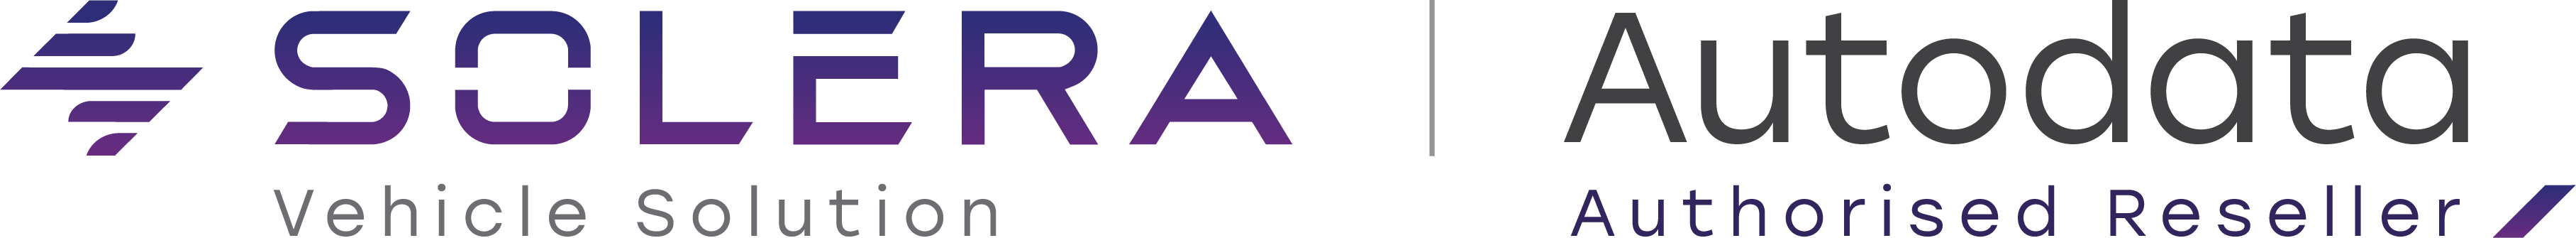 Logotip Solera in Autodata 